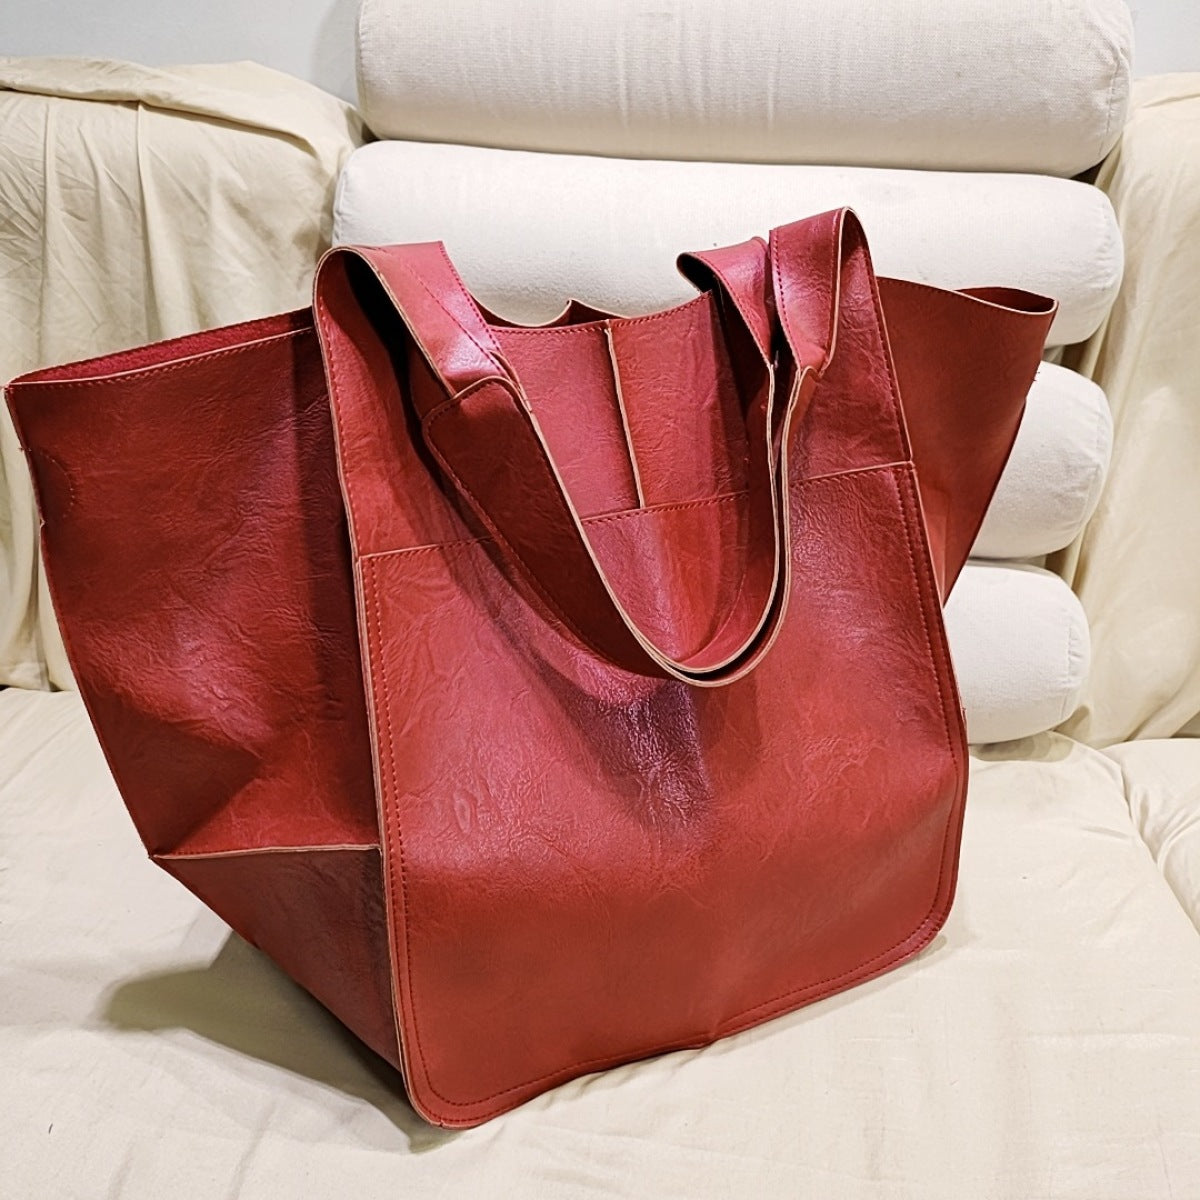 Women's Simple Large Capacity Tote Bag